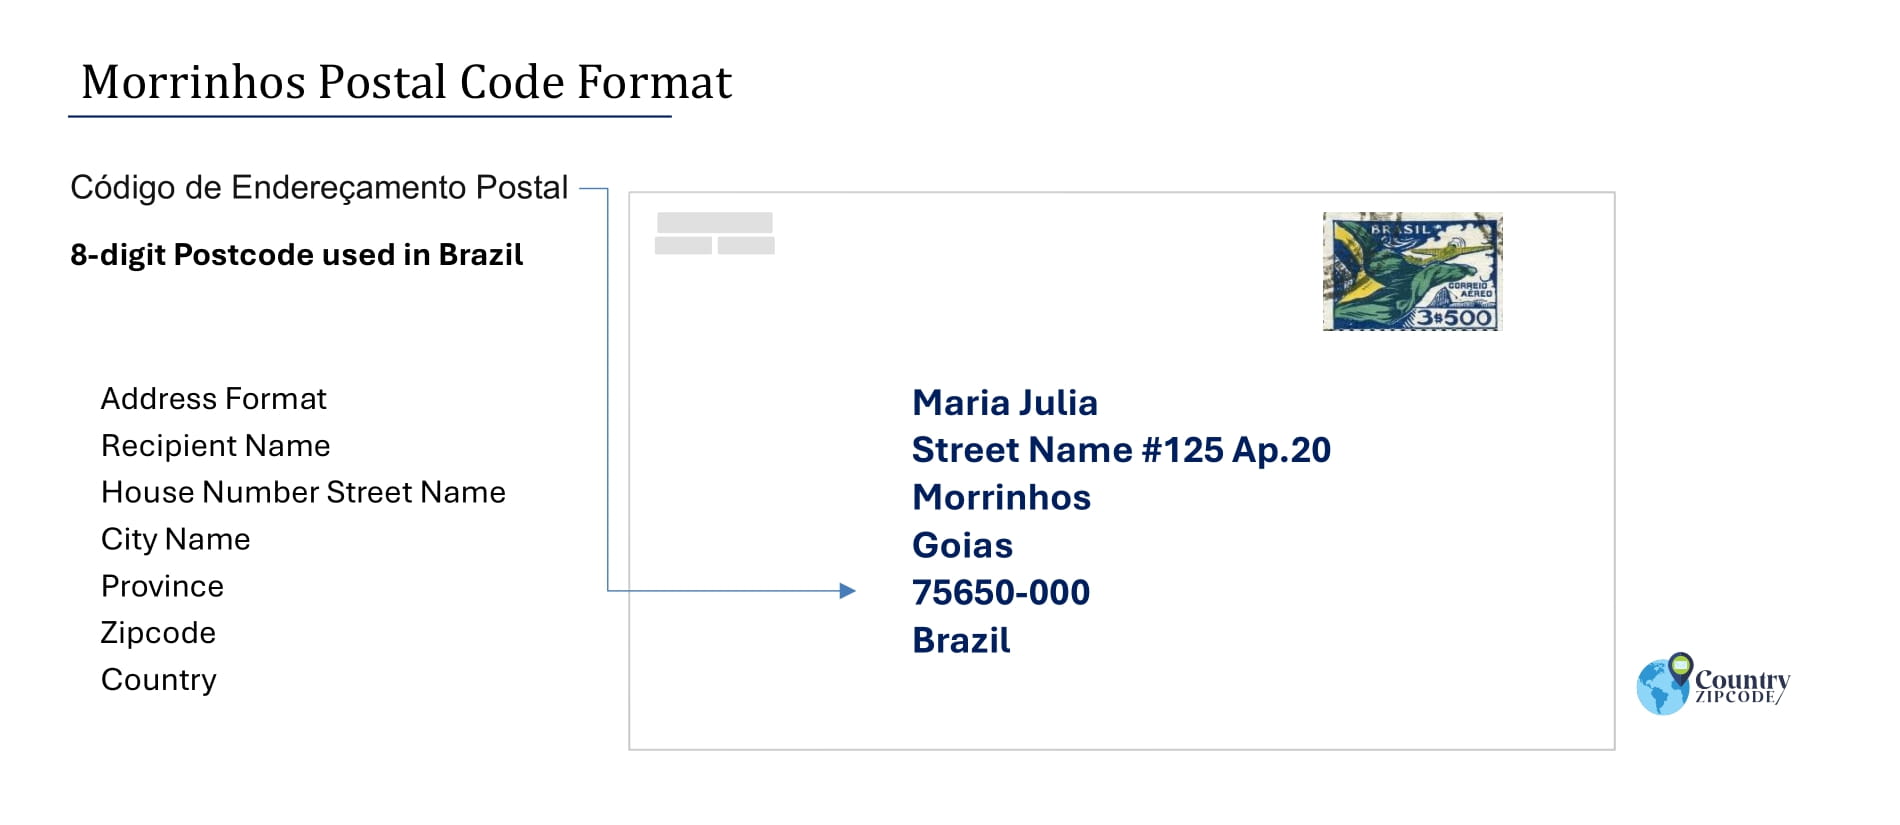 Example of Codigo de Enderecamento Postal and Address format of Morrinhos Goias Brazil